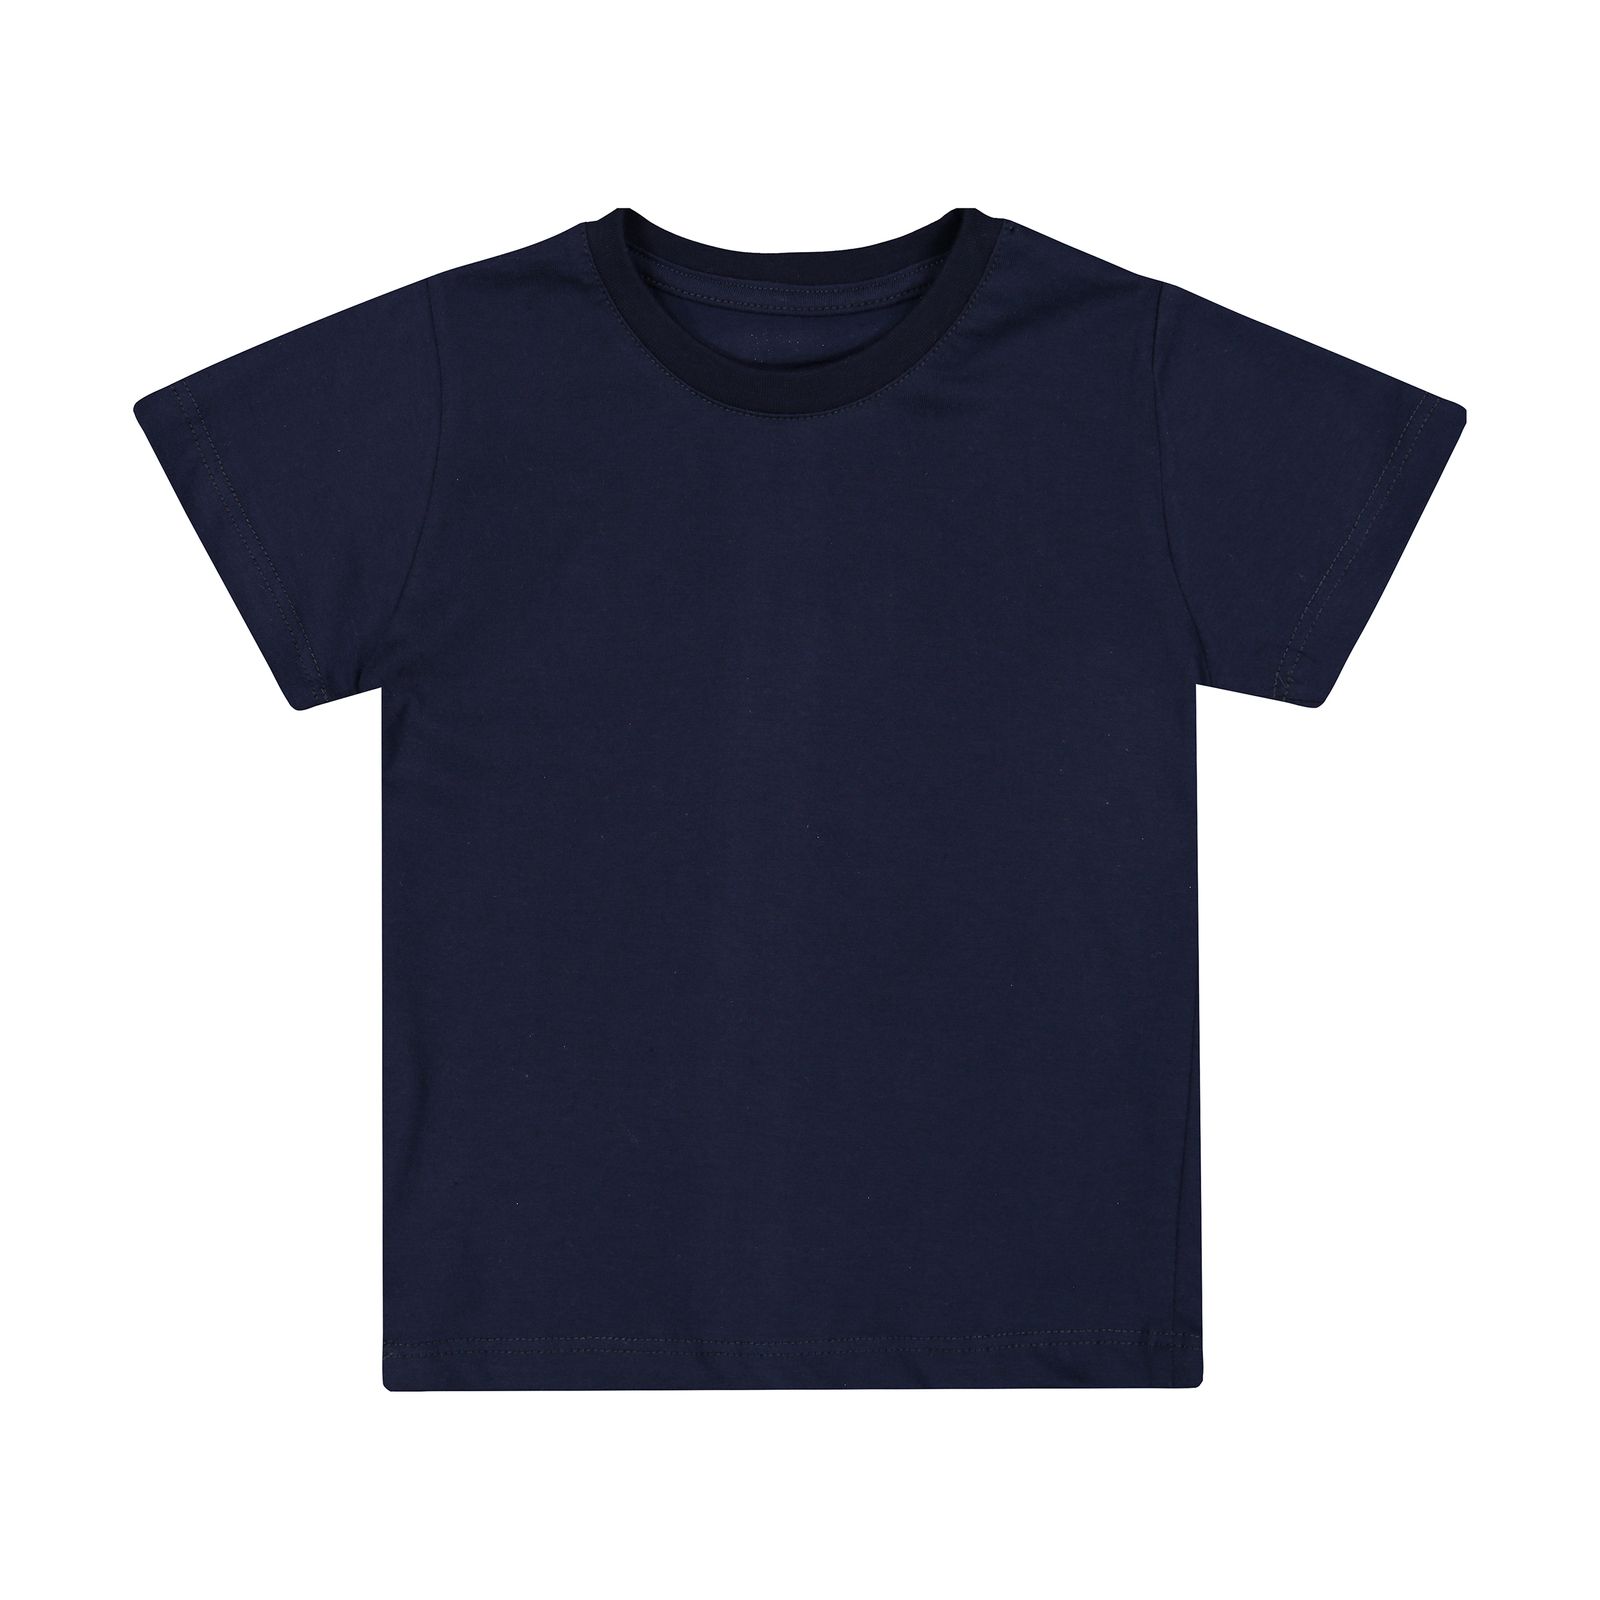 تی شرت بچگانه زانتوس مدل 141010-59 -  - 1